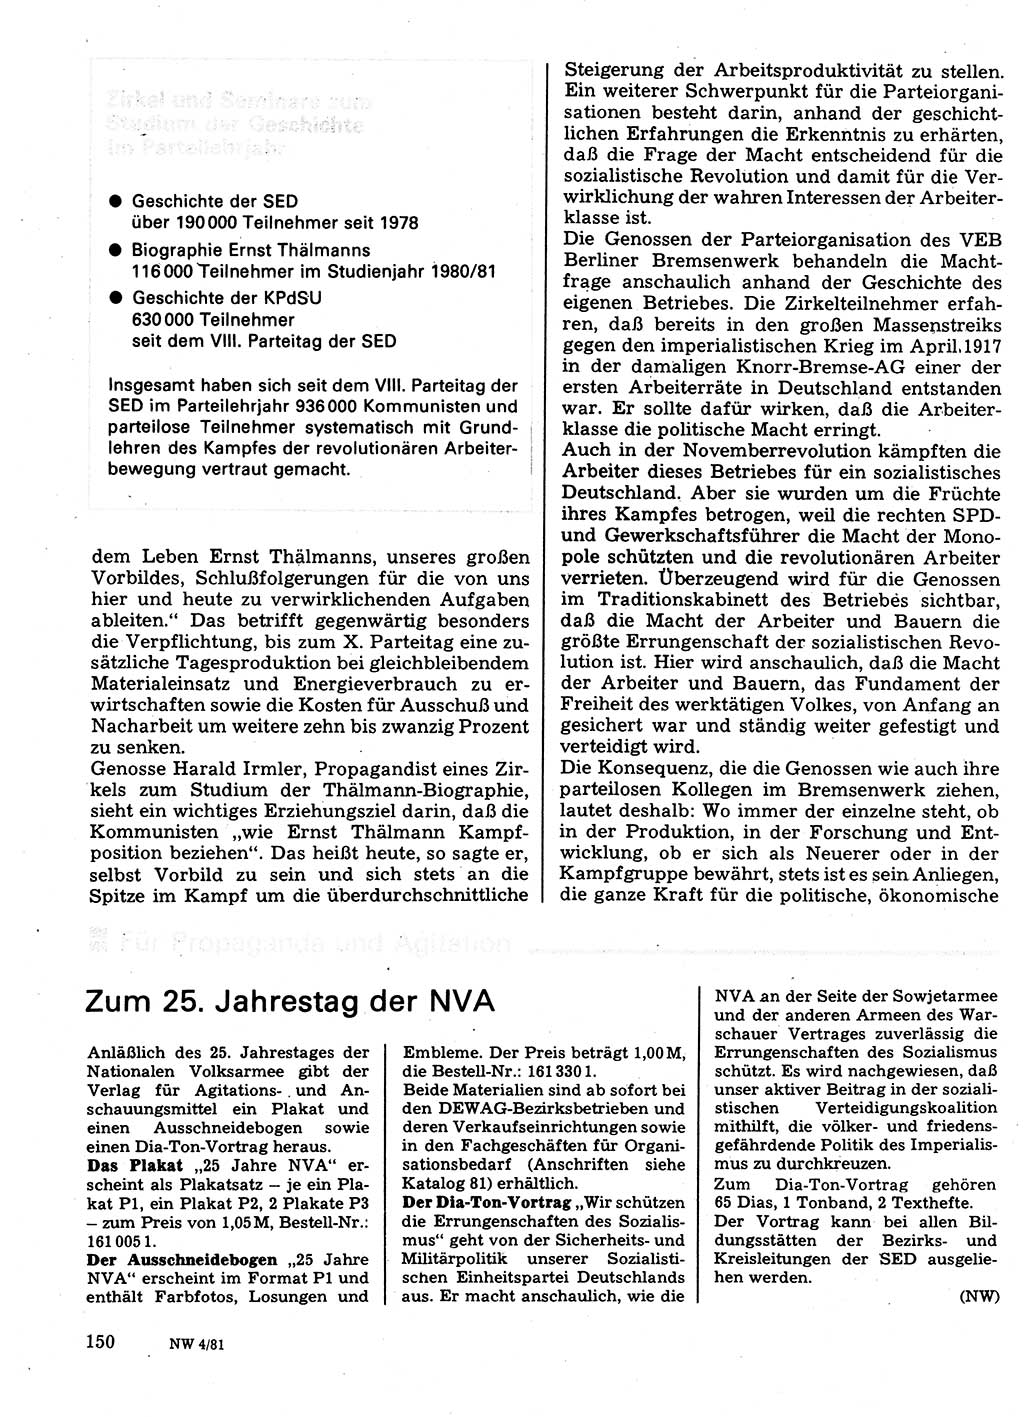 Neuer Weg (NW), Organ des Zentralkomitees (ZK) der SED (Sozialistische Einheitspartei Deutschlands) für Fragen des Parteilebens, 36. Jahrgang [Deutsche Demokratische Republik (DDR)] 1981, Seite 150 (NW ZK SED DDR 1981, S. 150)